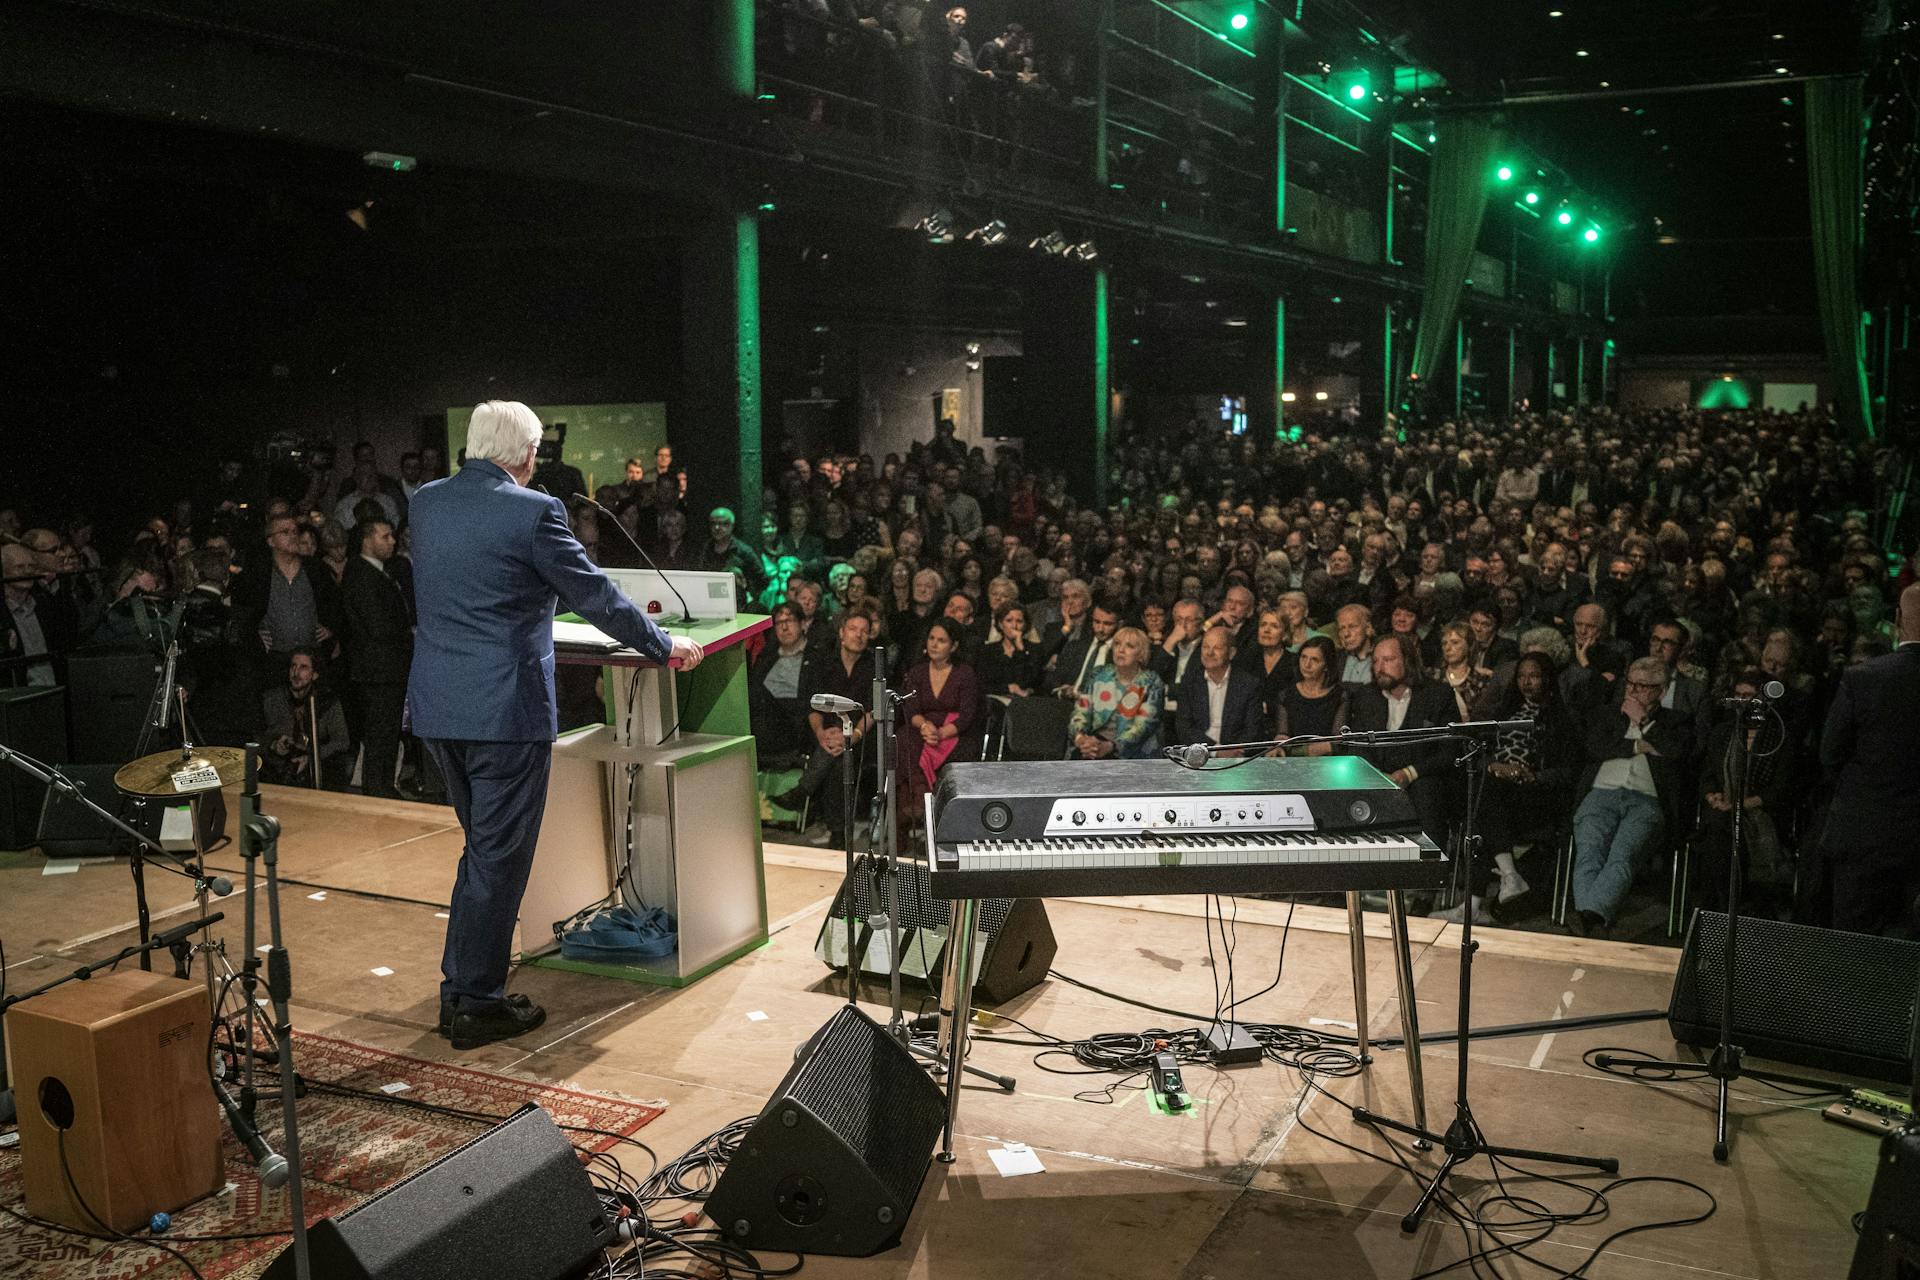 Bundespräsident Frank-Walter Steinmeier bei seiner Rede von hinten fotografiert mit Blick auf das Publikum.